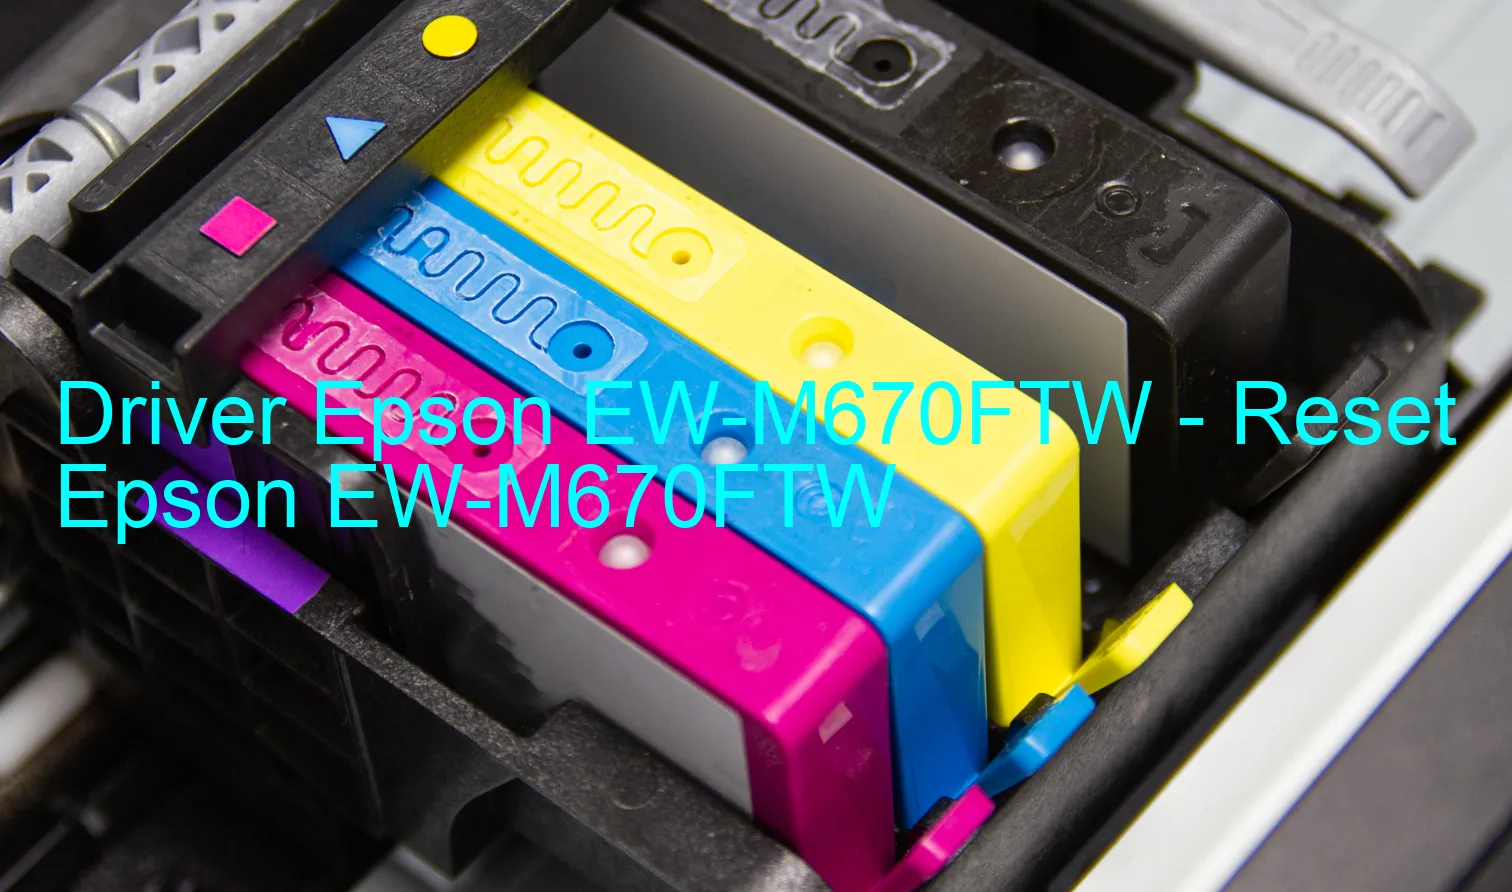 Epson EW-M670FTWのドライバー、Epson EW-M670FTWのリセットソフトウェア